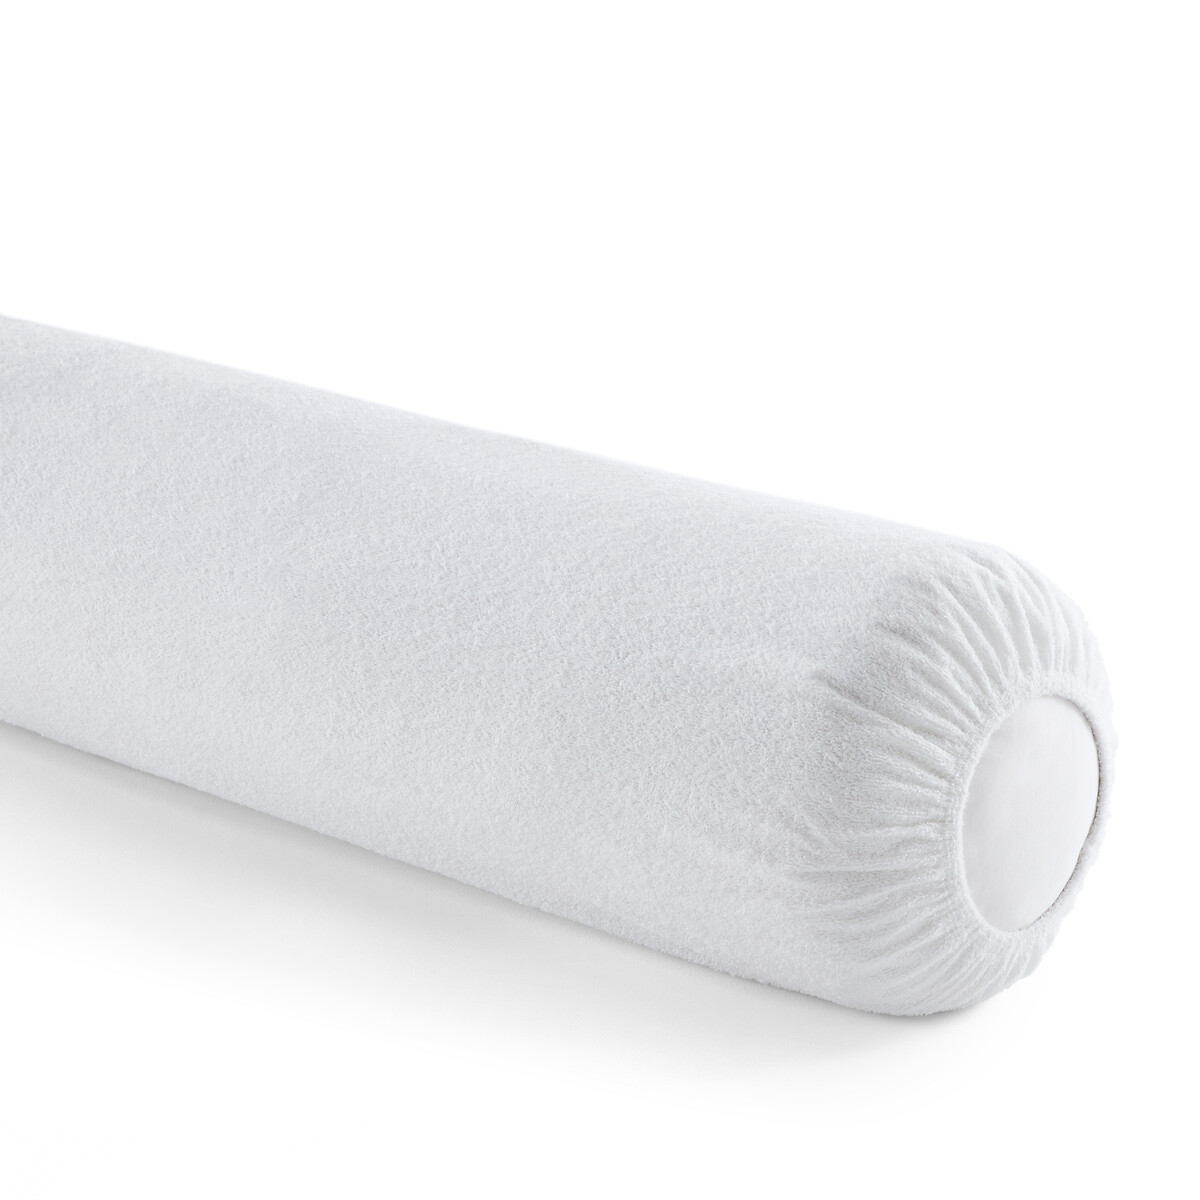 Чехол защитный на подушку-валик с обработкой против клещей длина: 140 см белый защитный чехол на подушку с обработкой bi ome 40 x 60 см белый